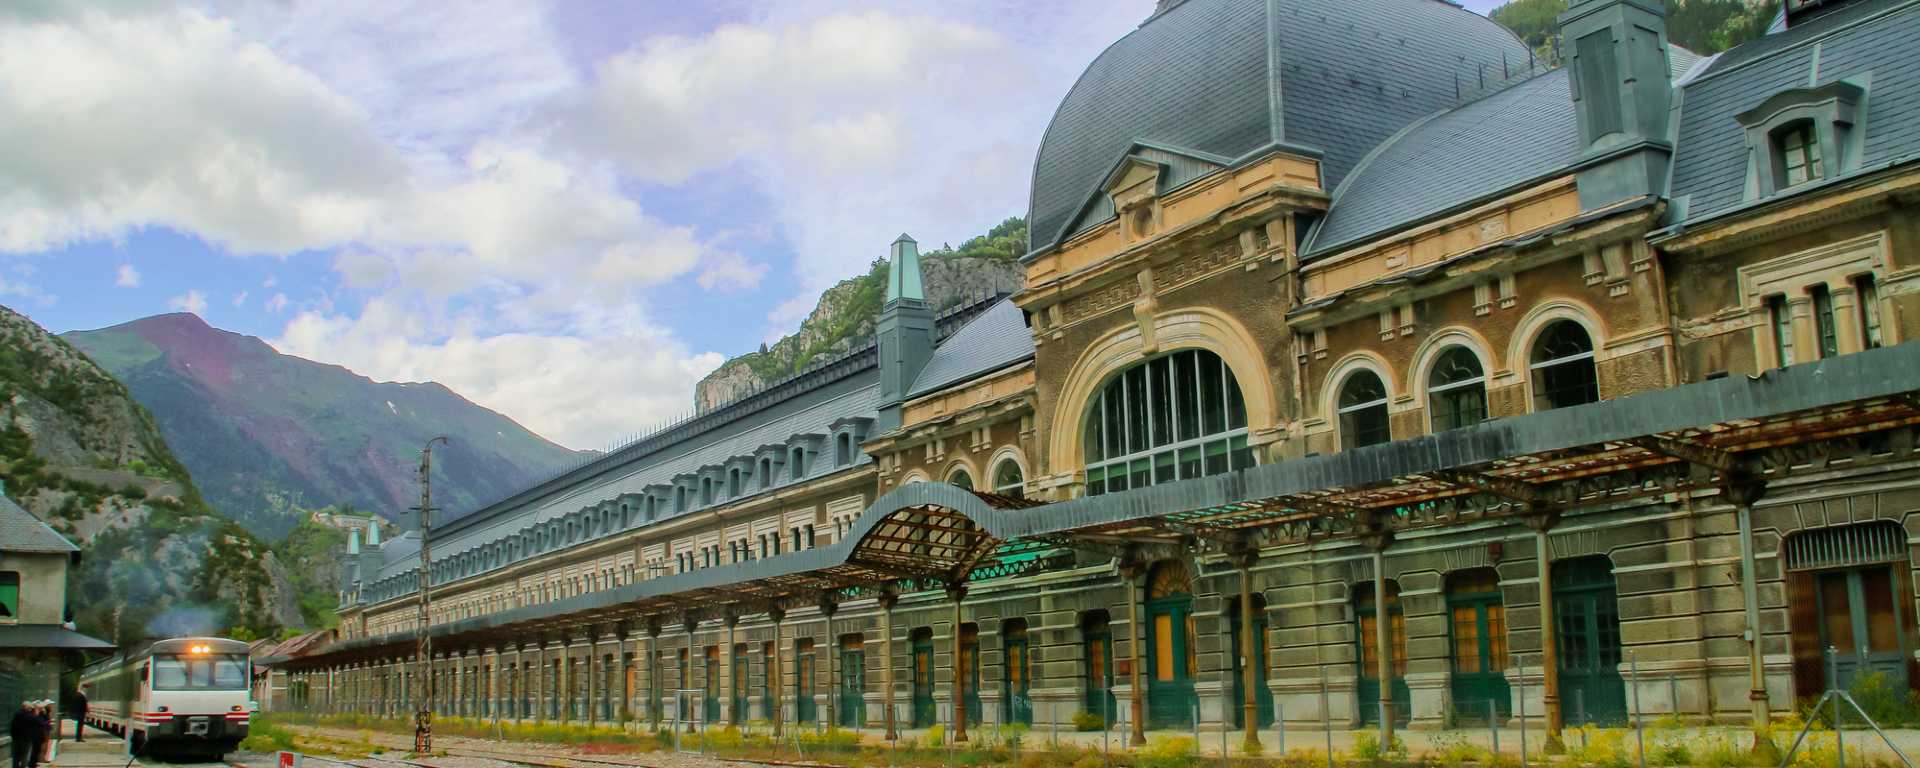 Canfranc, histoire d’une gare internationale dans les Pyrénées